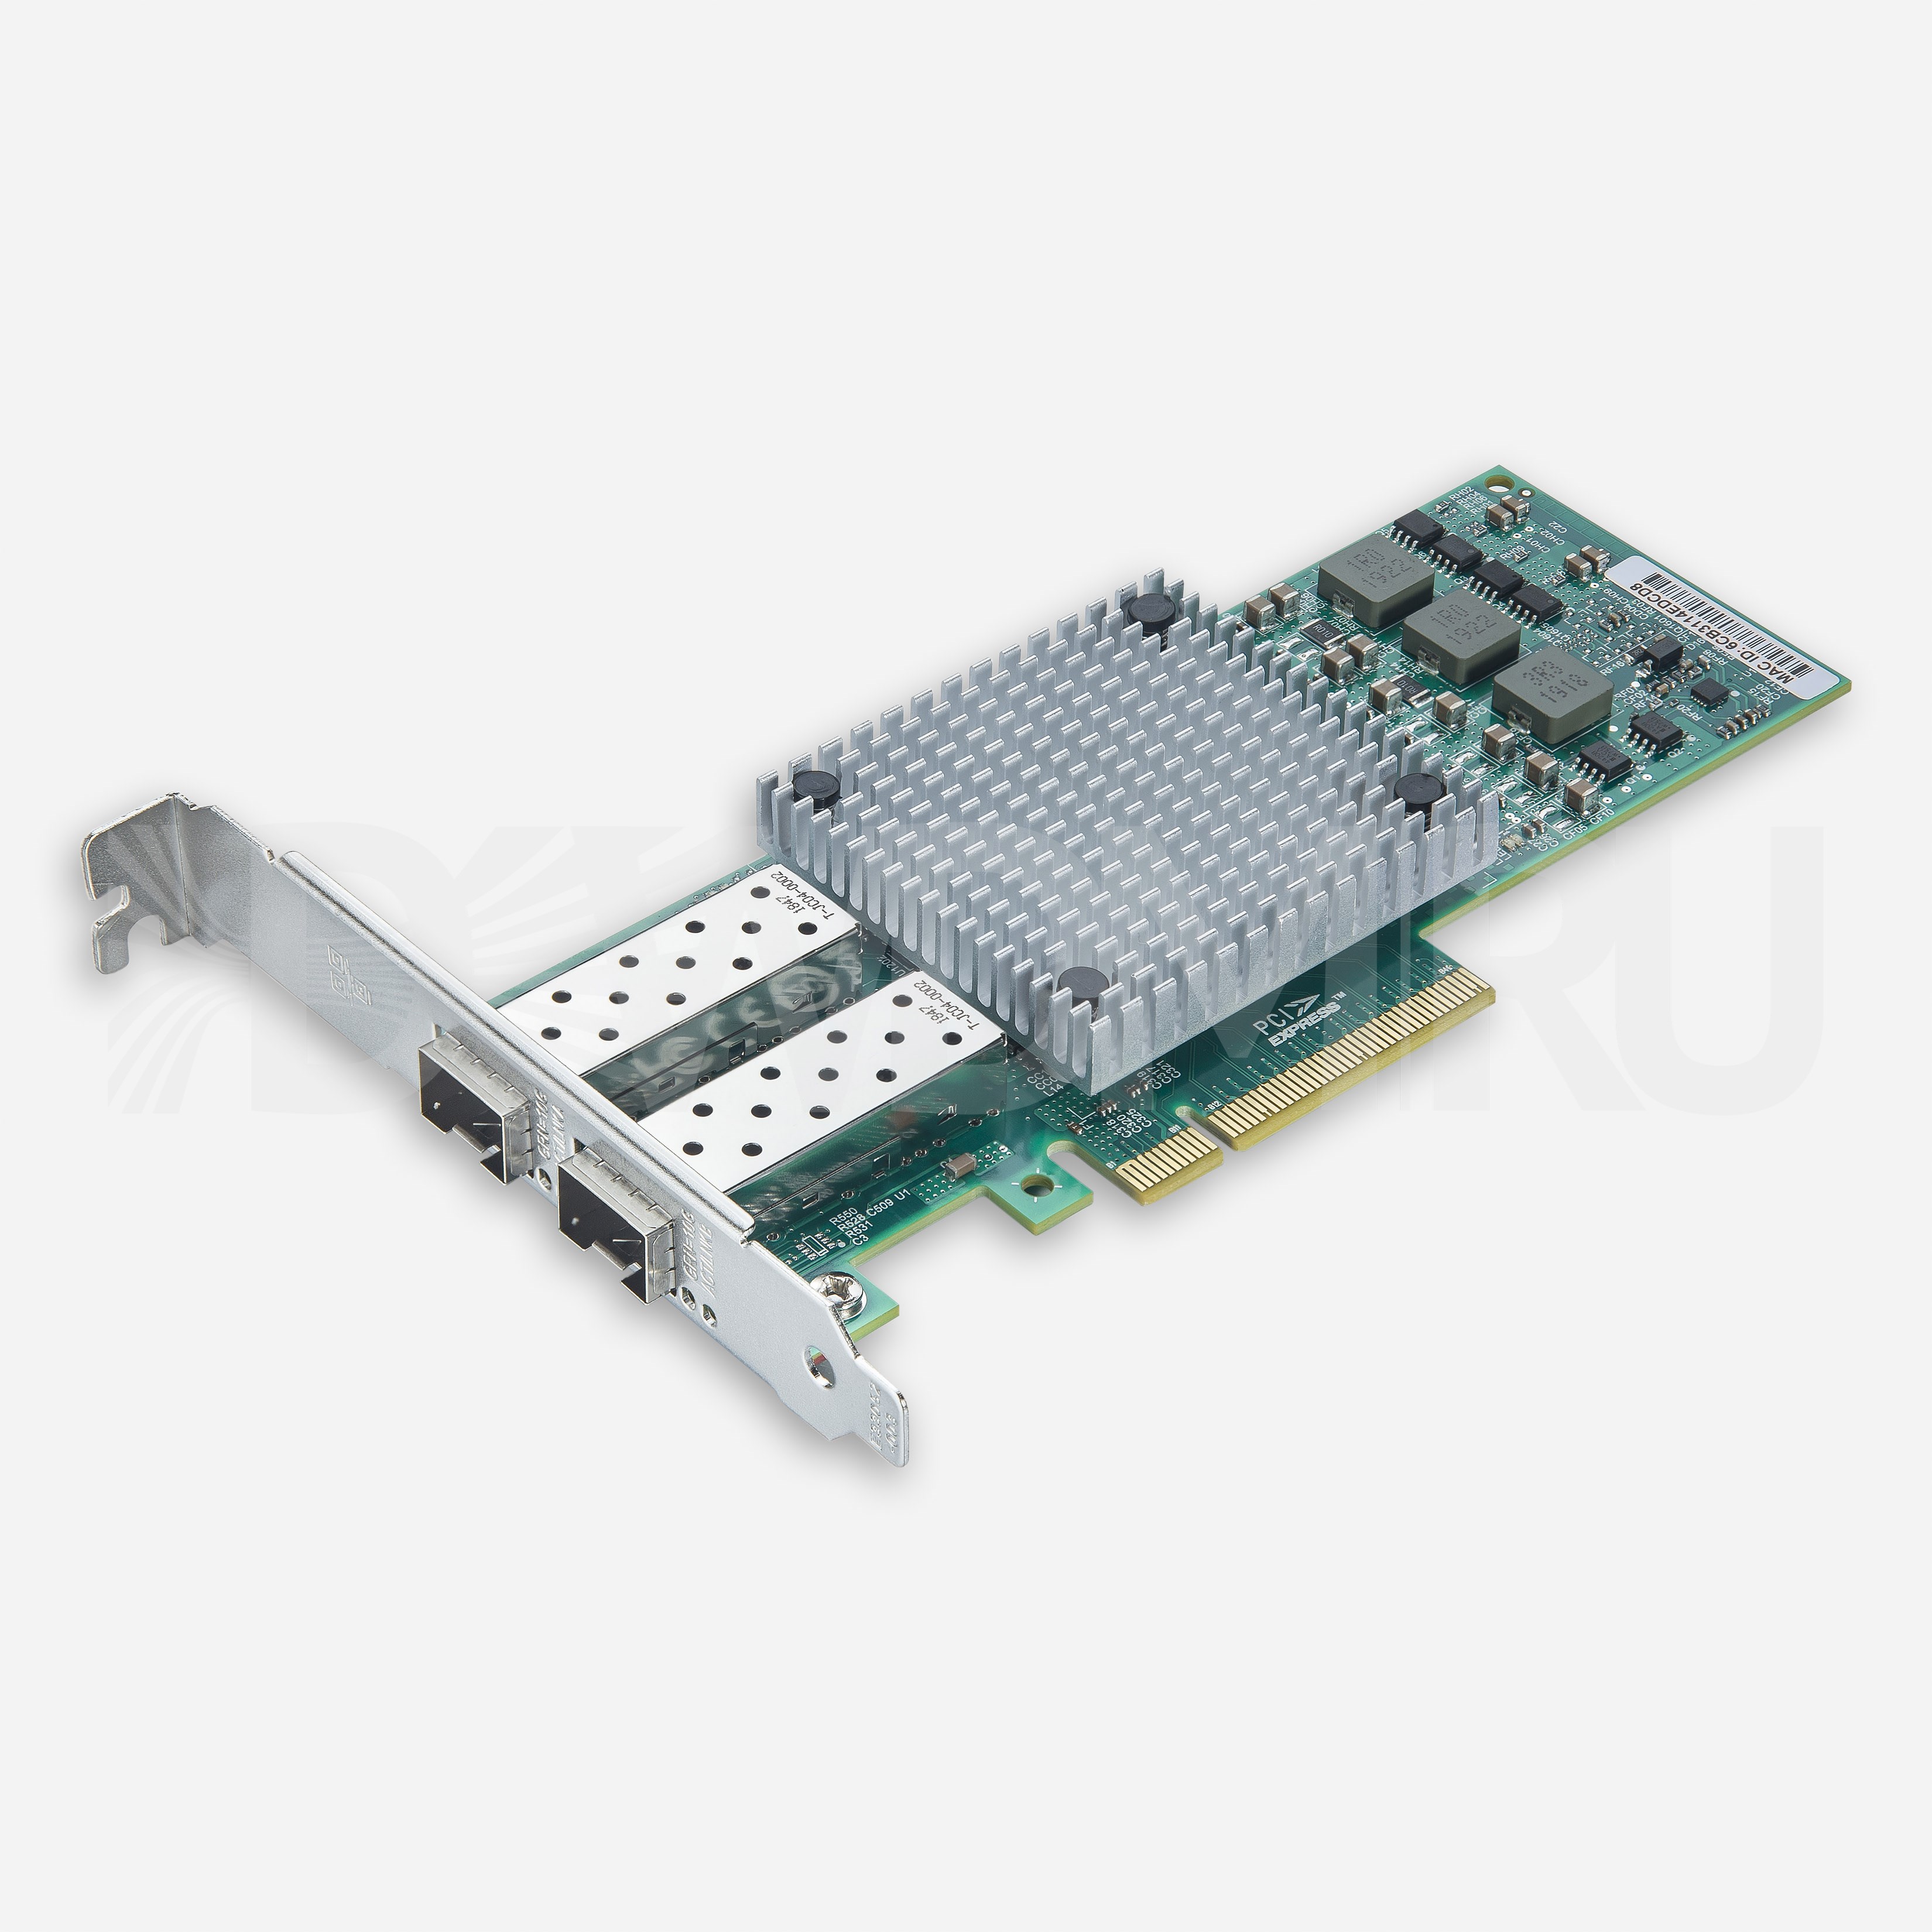 Сетевая карта 10 Gb/s (NIC), 2 порта SFP+, Broadcom 57810S Controller, PCIe 2.0 X8 - ДВДМ.РУ (DSO-N-10G2S1-57810S-X20-8)